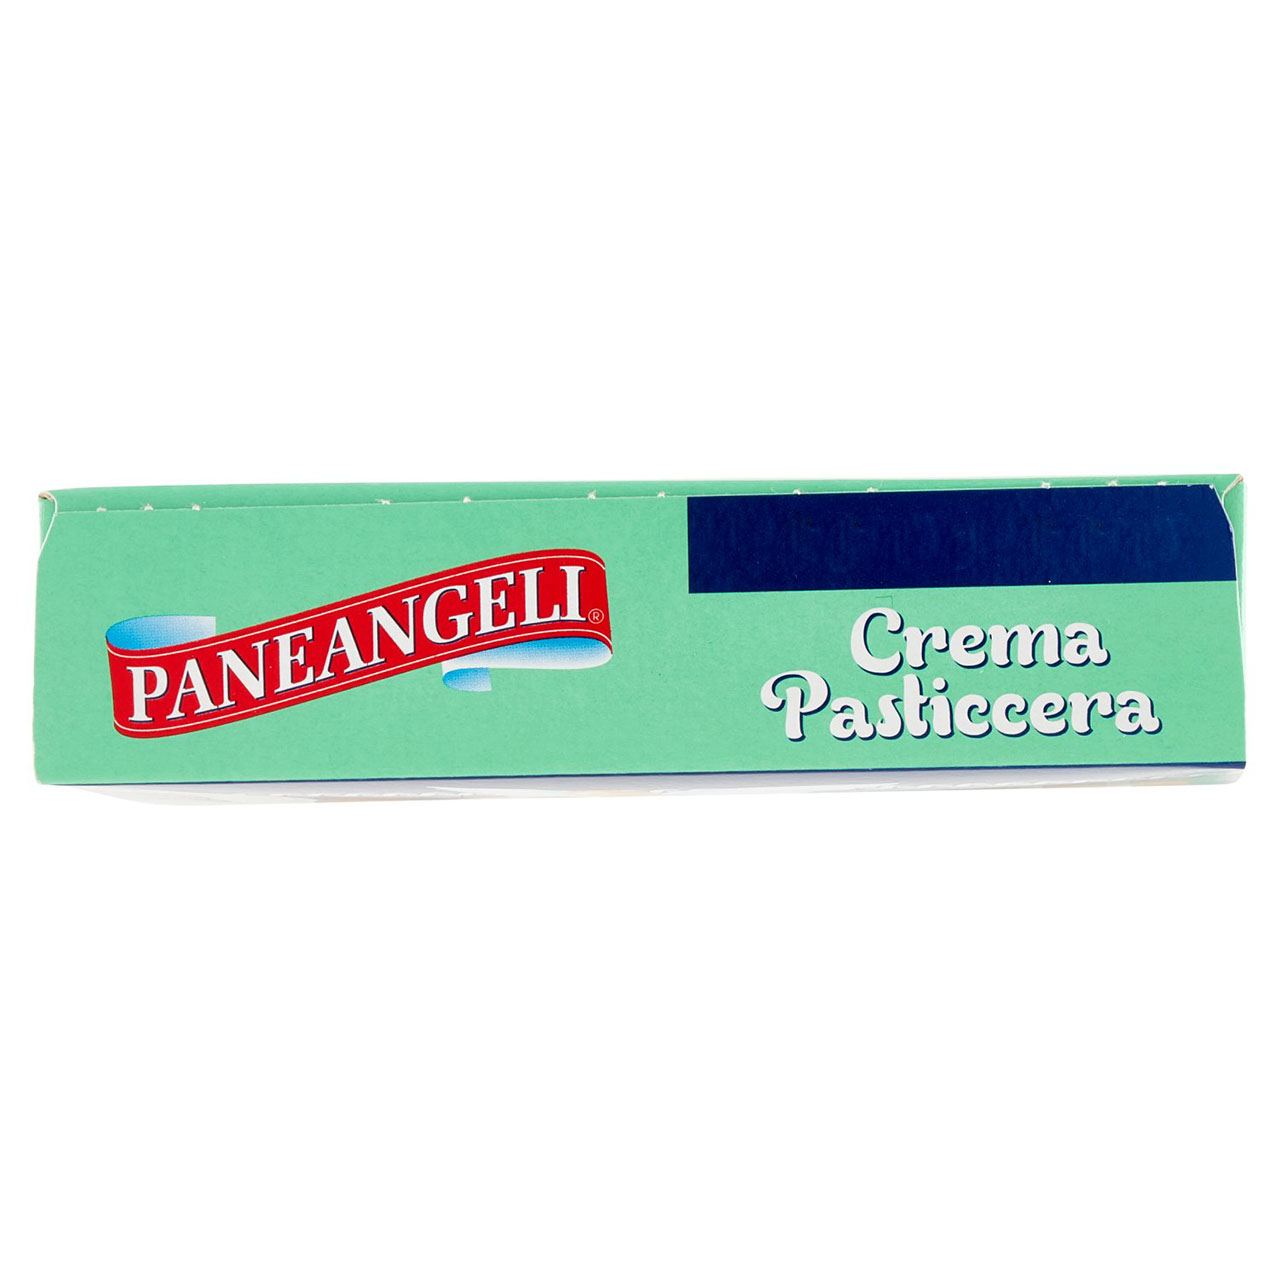 Paneangeli Crema Pasticcera in vendita online